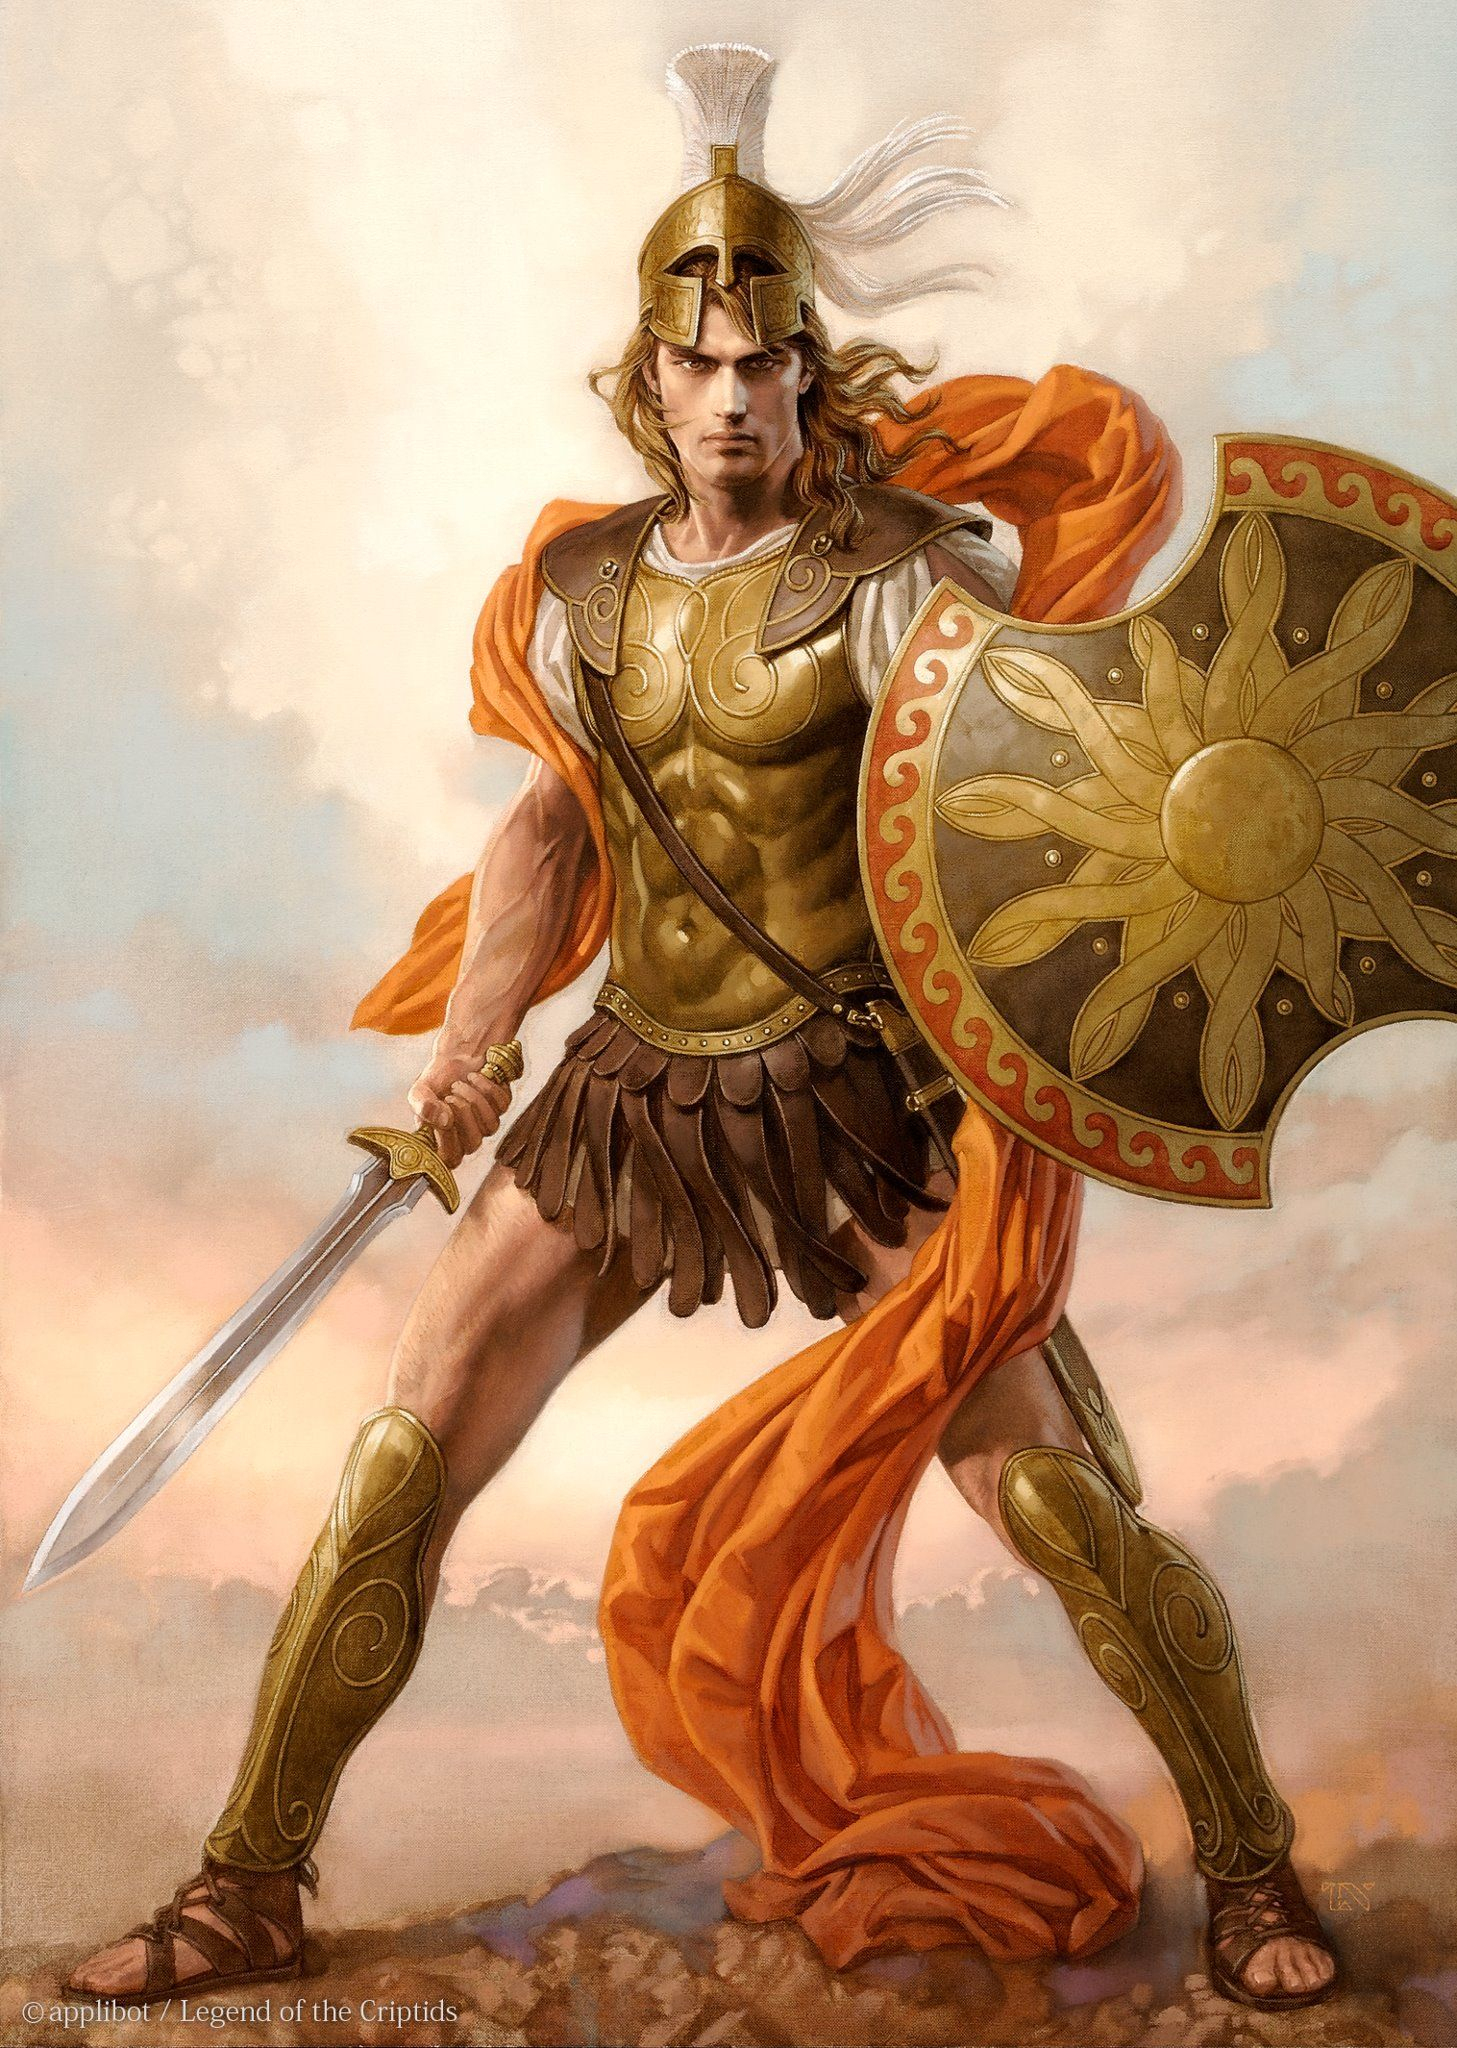 Griegos | Griechische Krieger, Mythen Und Legenden, Mythologie innen Griechische Krieger